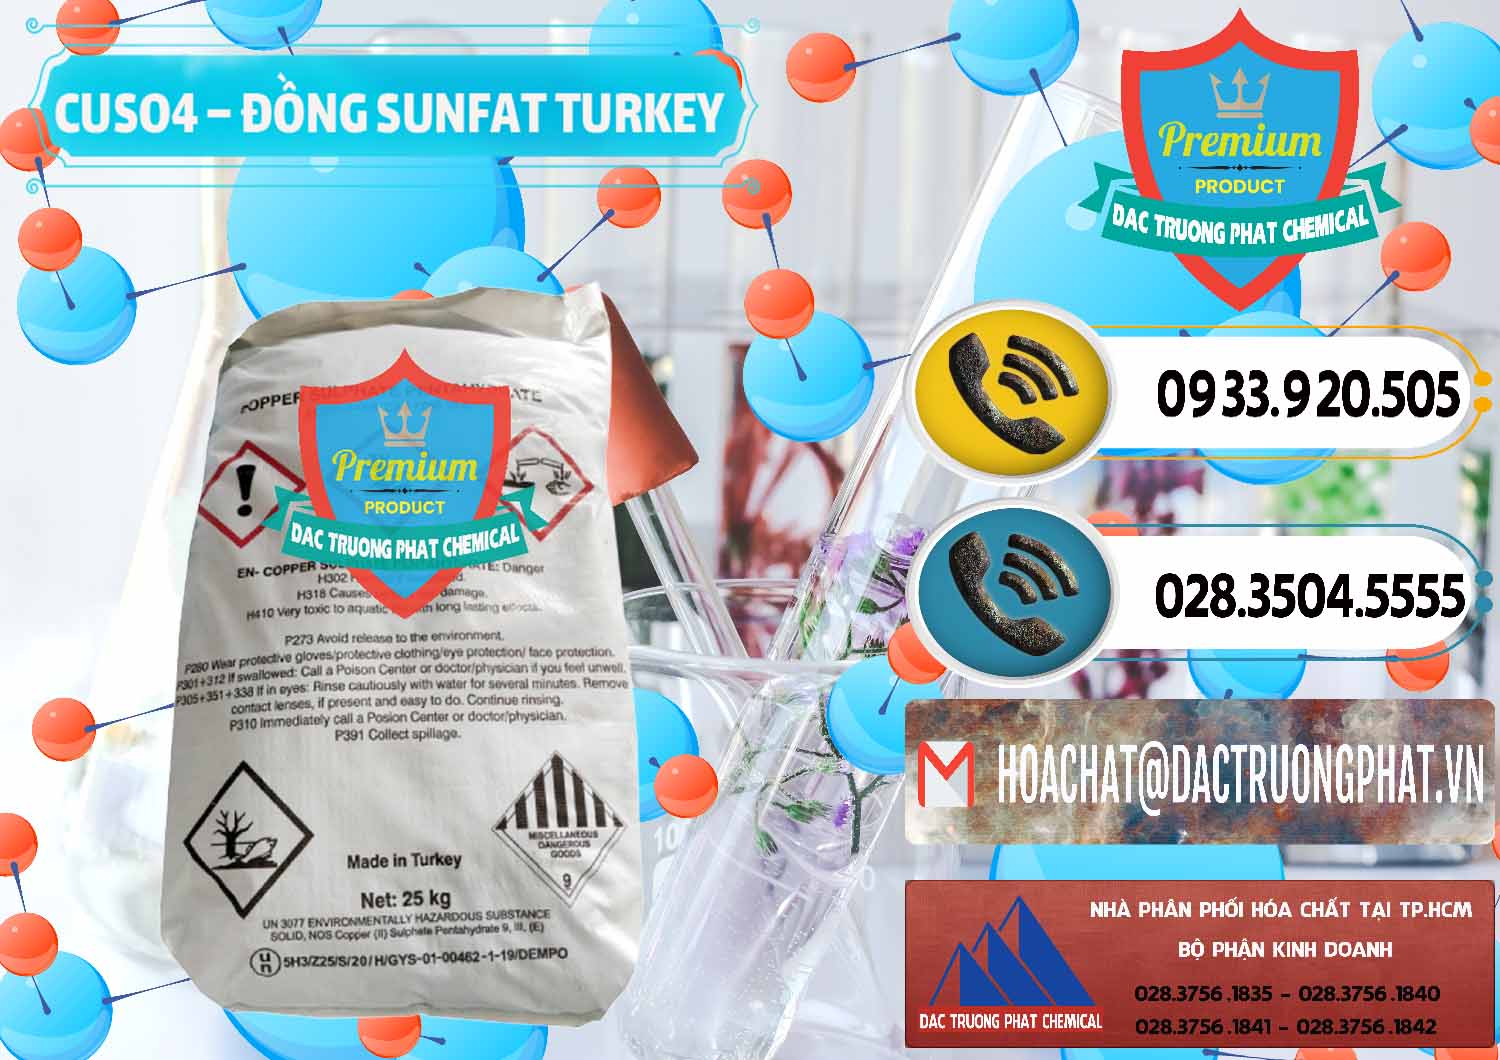 Cty chuyên bán và cung cấp CuSO4 – Đồng Sunfat Thổ Nhĩ Kỳ Turkey - 0481 - Phân phối ( nhập khẩu ) hóa chất tại TP.HCM - hoachatdetnhuom.vn